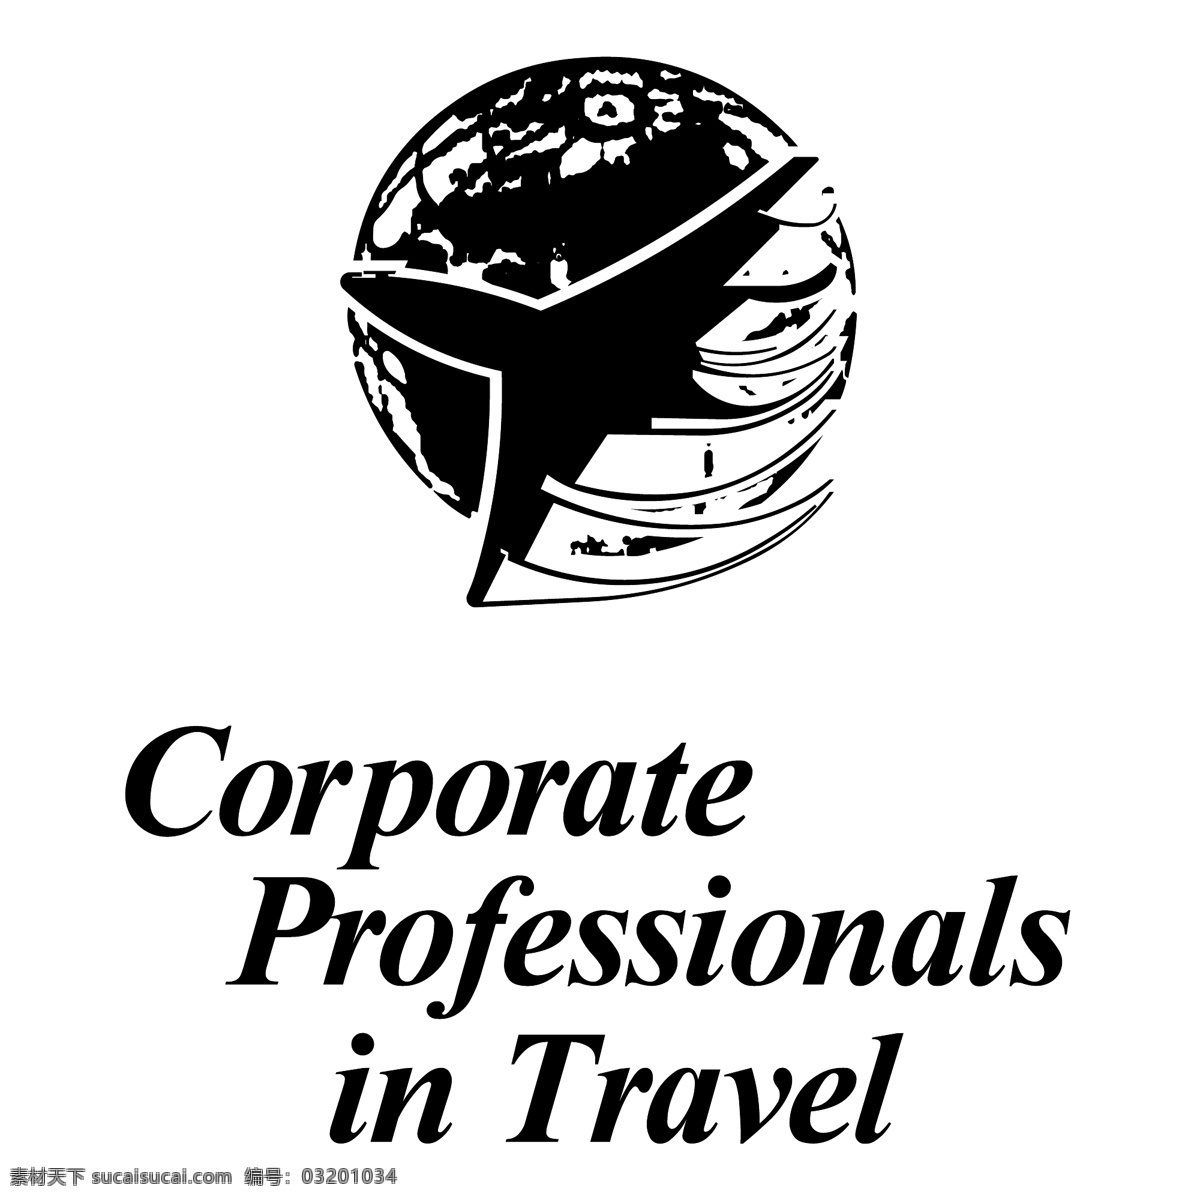 旅游公司 专业人员 公司 旅行 旅游企业 旅游企业矢量 矢量公司旅游 免费 矢量 图形 旅游 载体 自由 蓝色